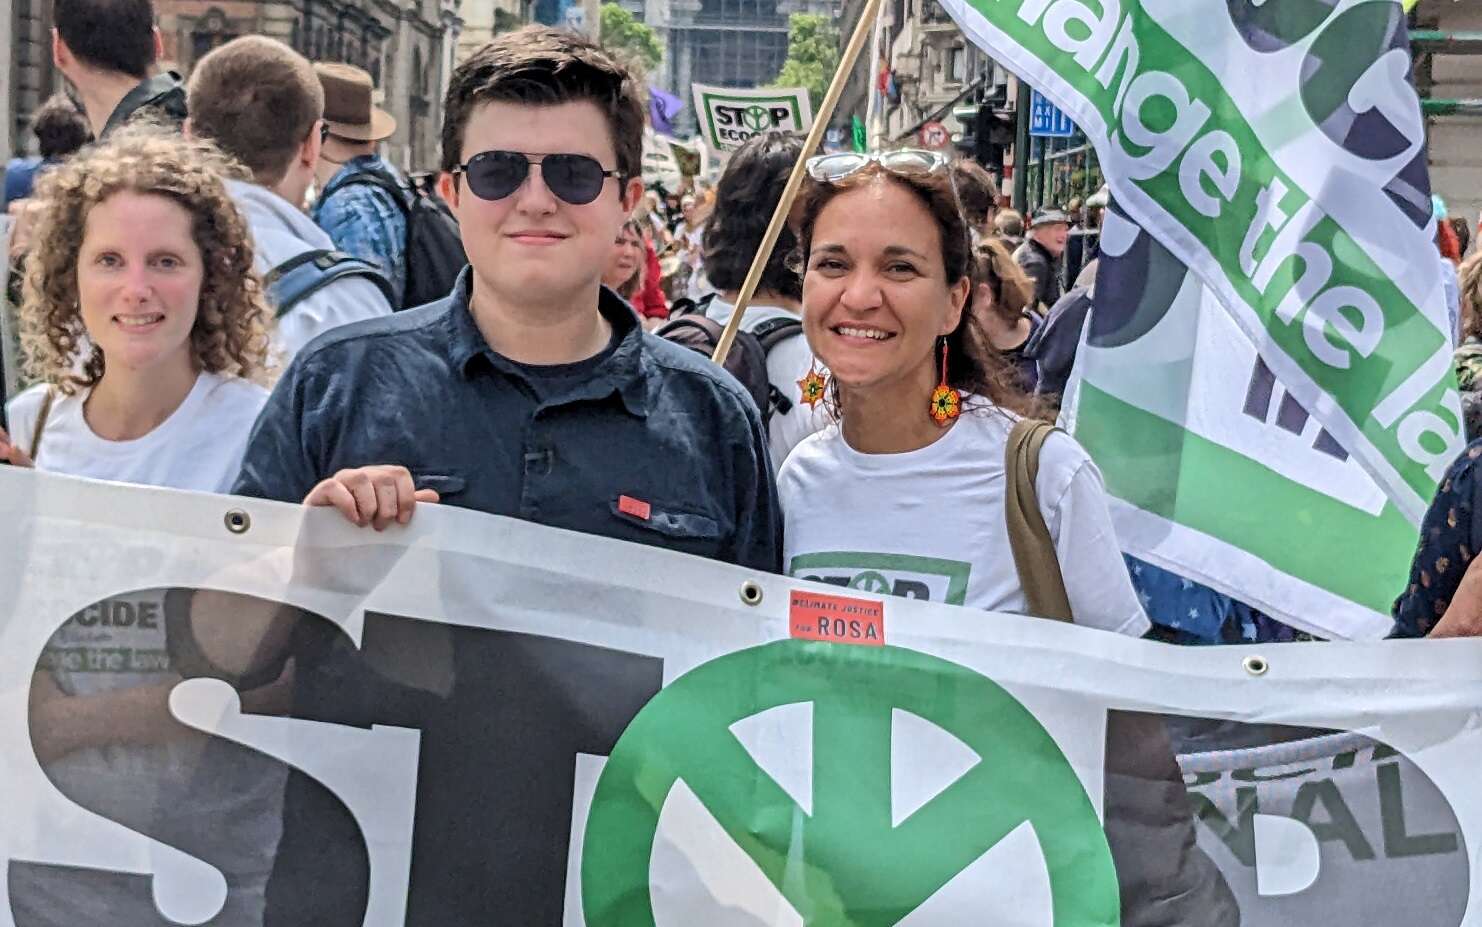 Klimaatactivist Benjamin op een betoging om ecocide in het wetboek op te nemen.